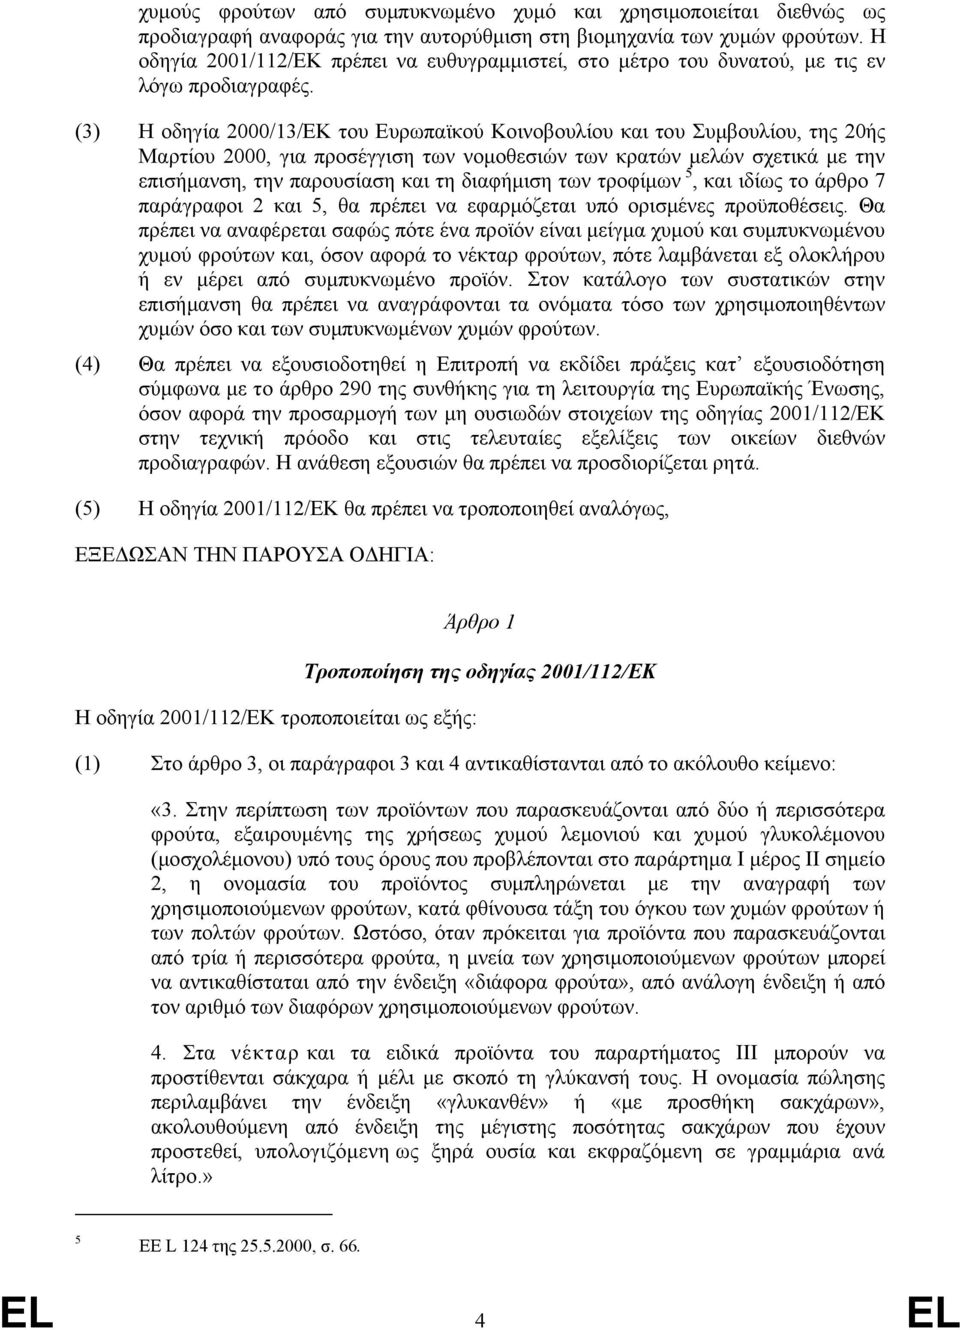 (3) Η οδηγία 2000/13/ΕΚ του Ευρωπαϊκού Κοινοβουλίου και του Συμβουλίου, της 20ής Μαρτίου 2000, για προσέγγιση των νομοθεσιών των κρατών μελών σχετικά με την επισήμανση, την παρουσίαση και τη